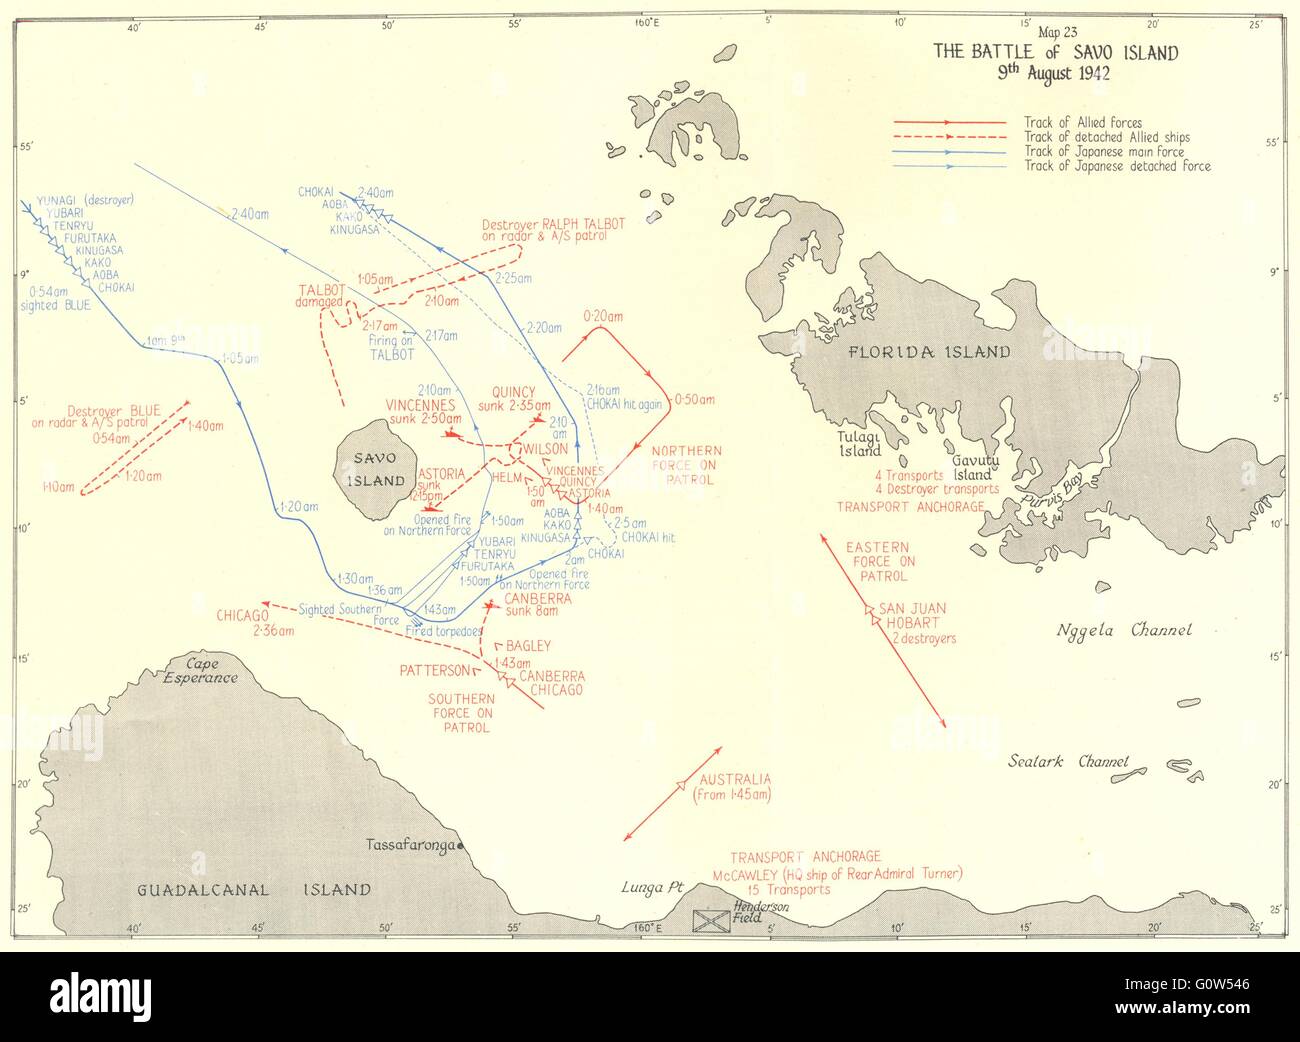 Pazifik: Die Schlacht von Savo Island 9. August 1942, 1956 Vintage Karte Stockfoto